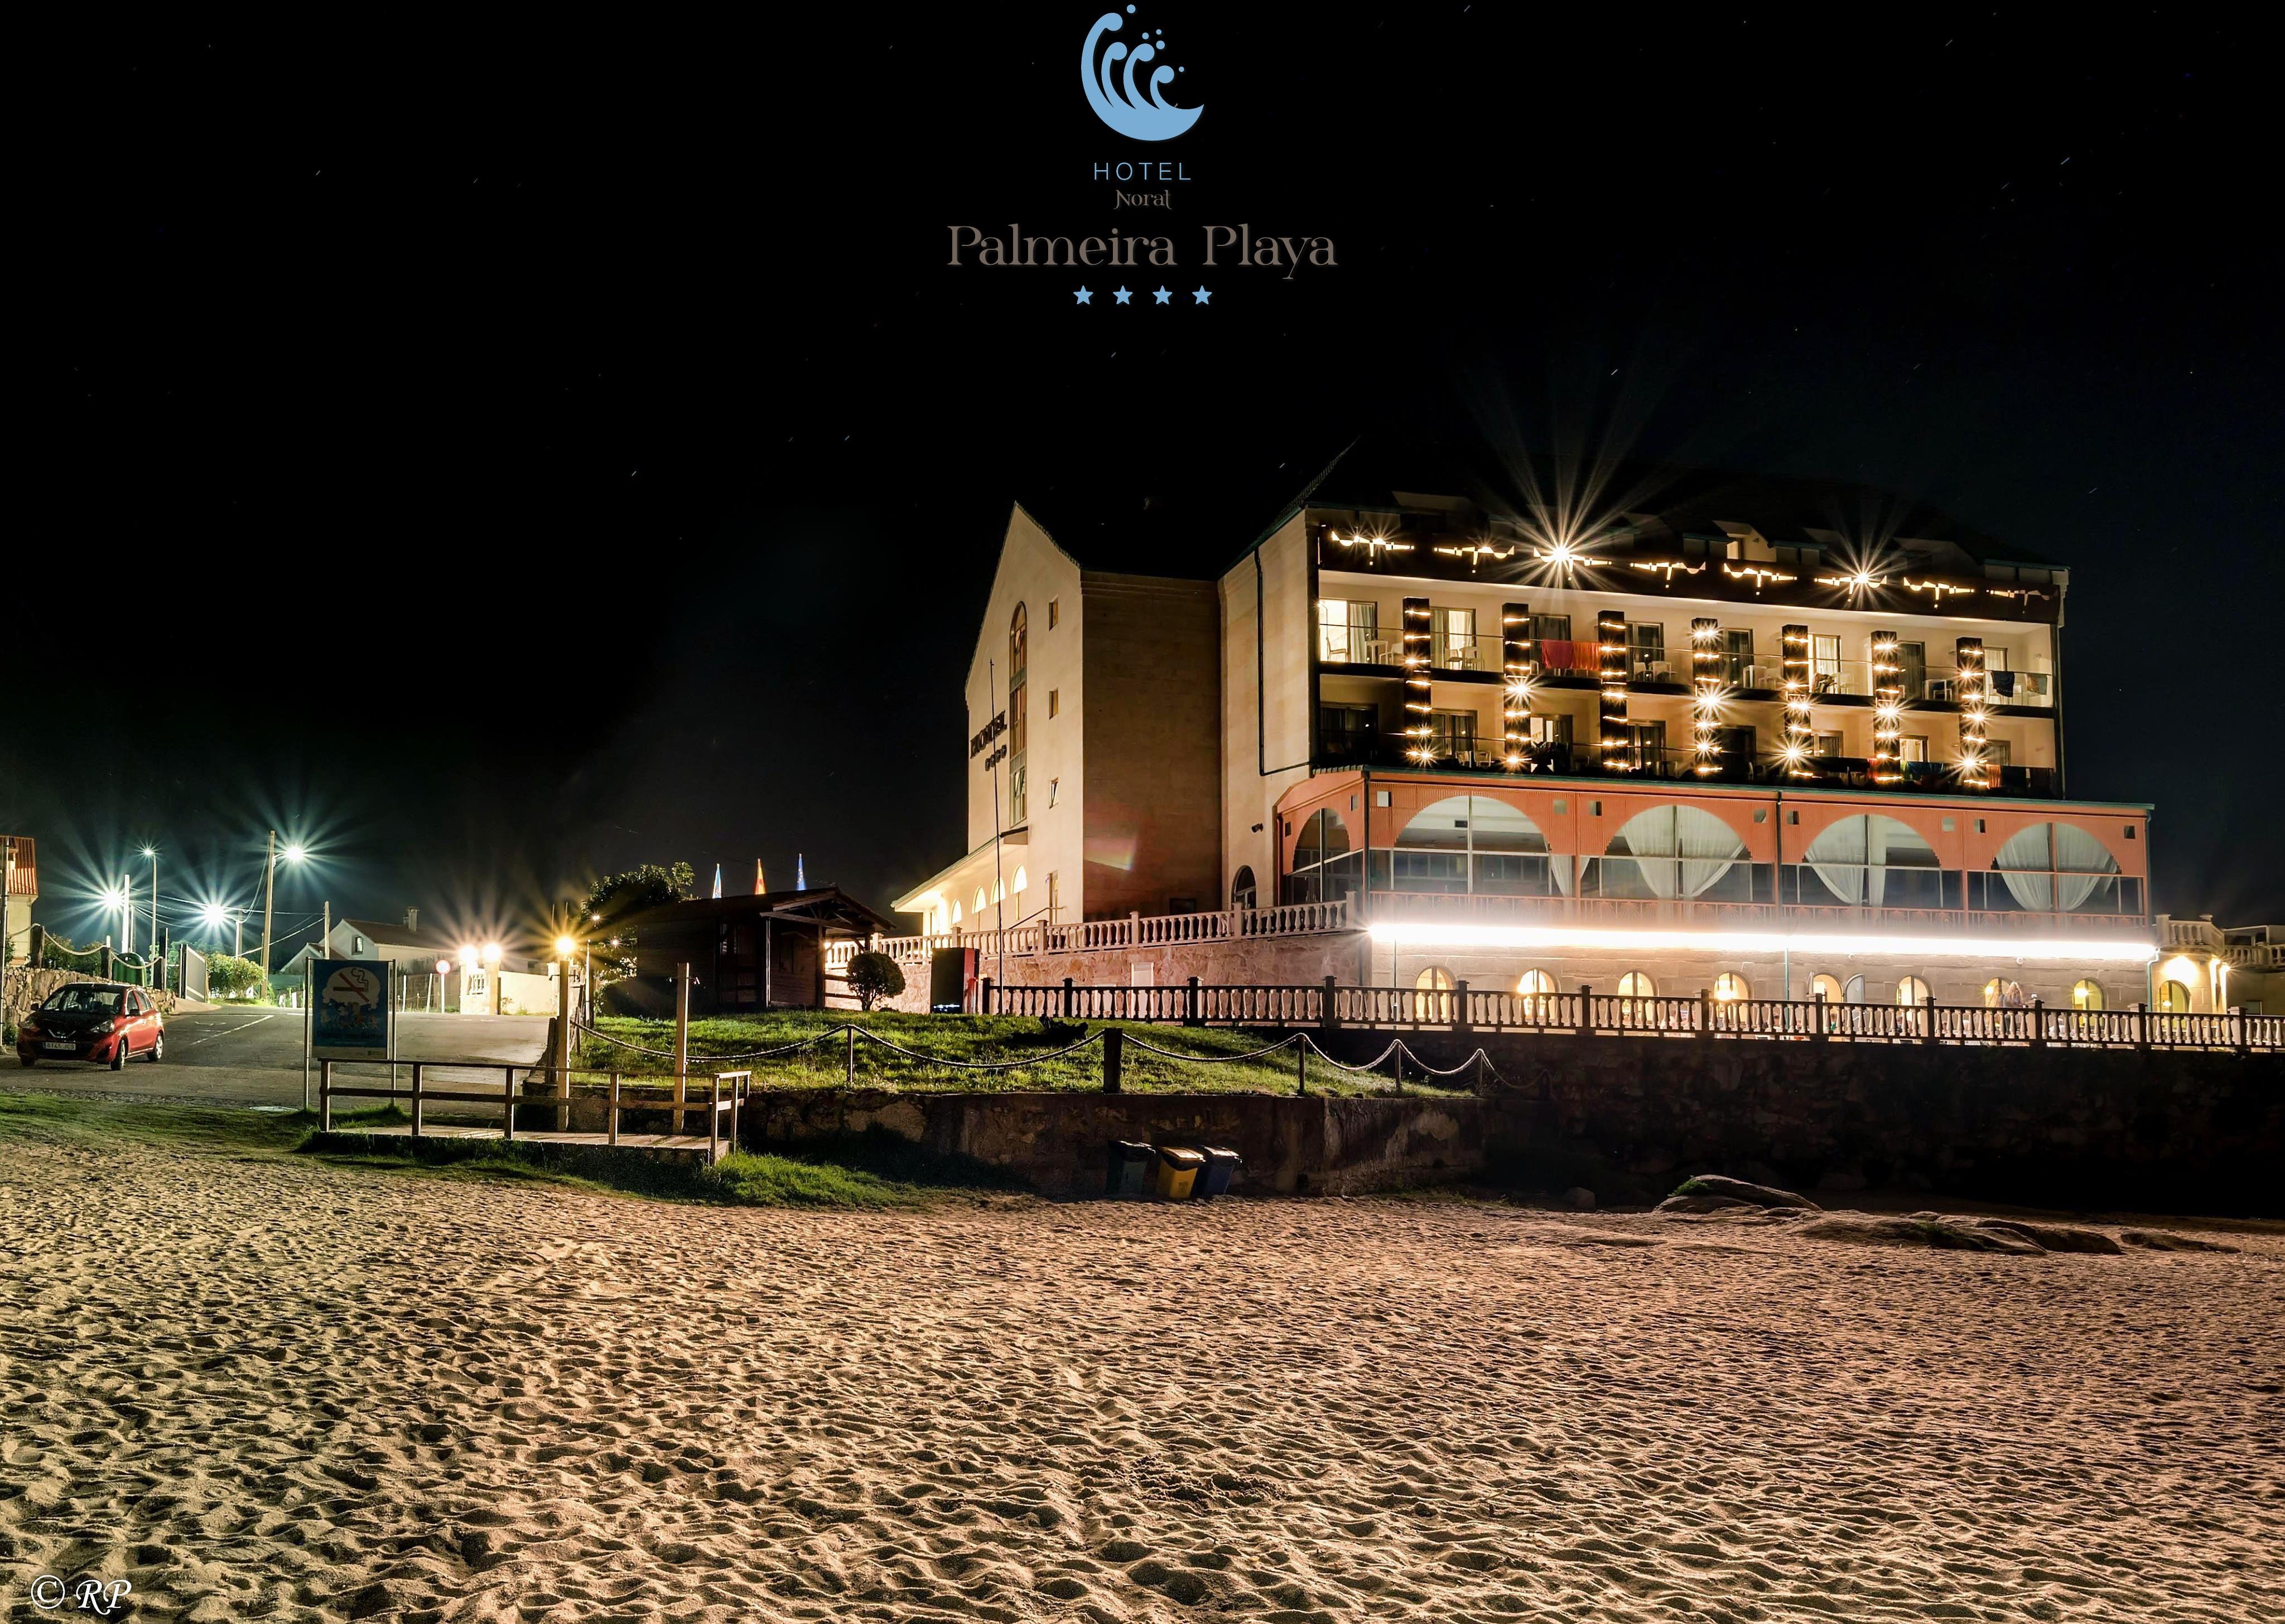 Hotel Norat Palmeira Playa Ribeira Exterior foto